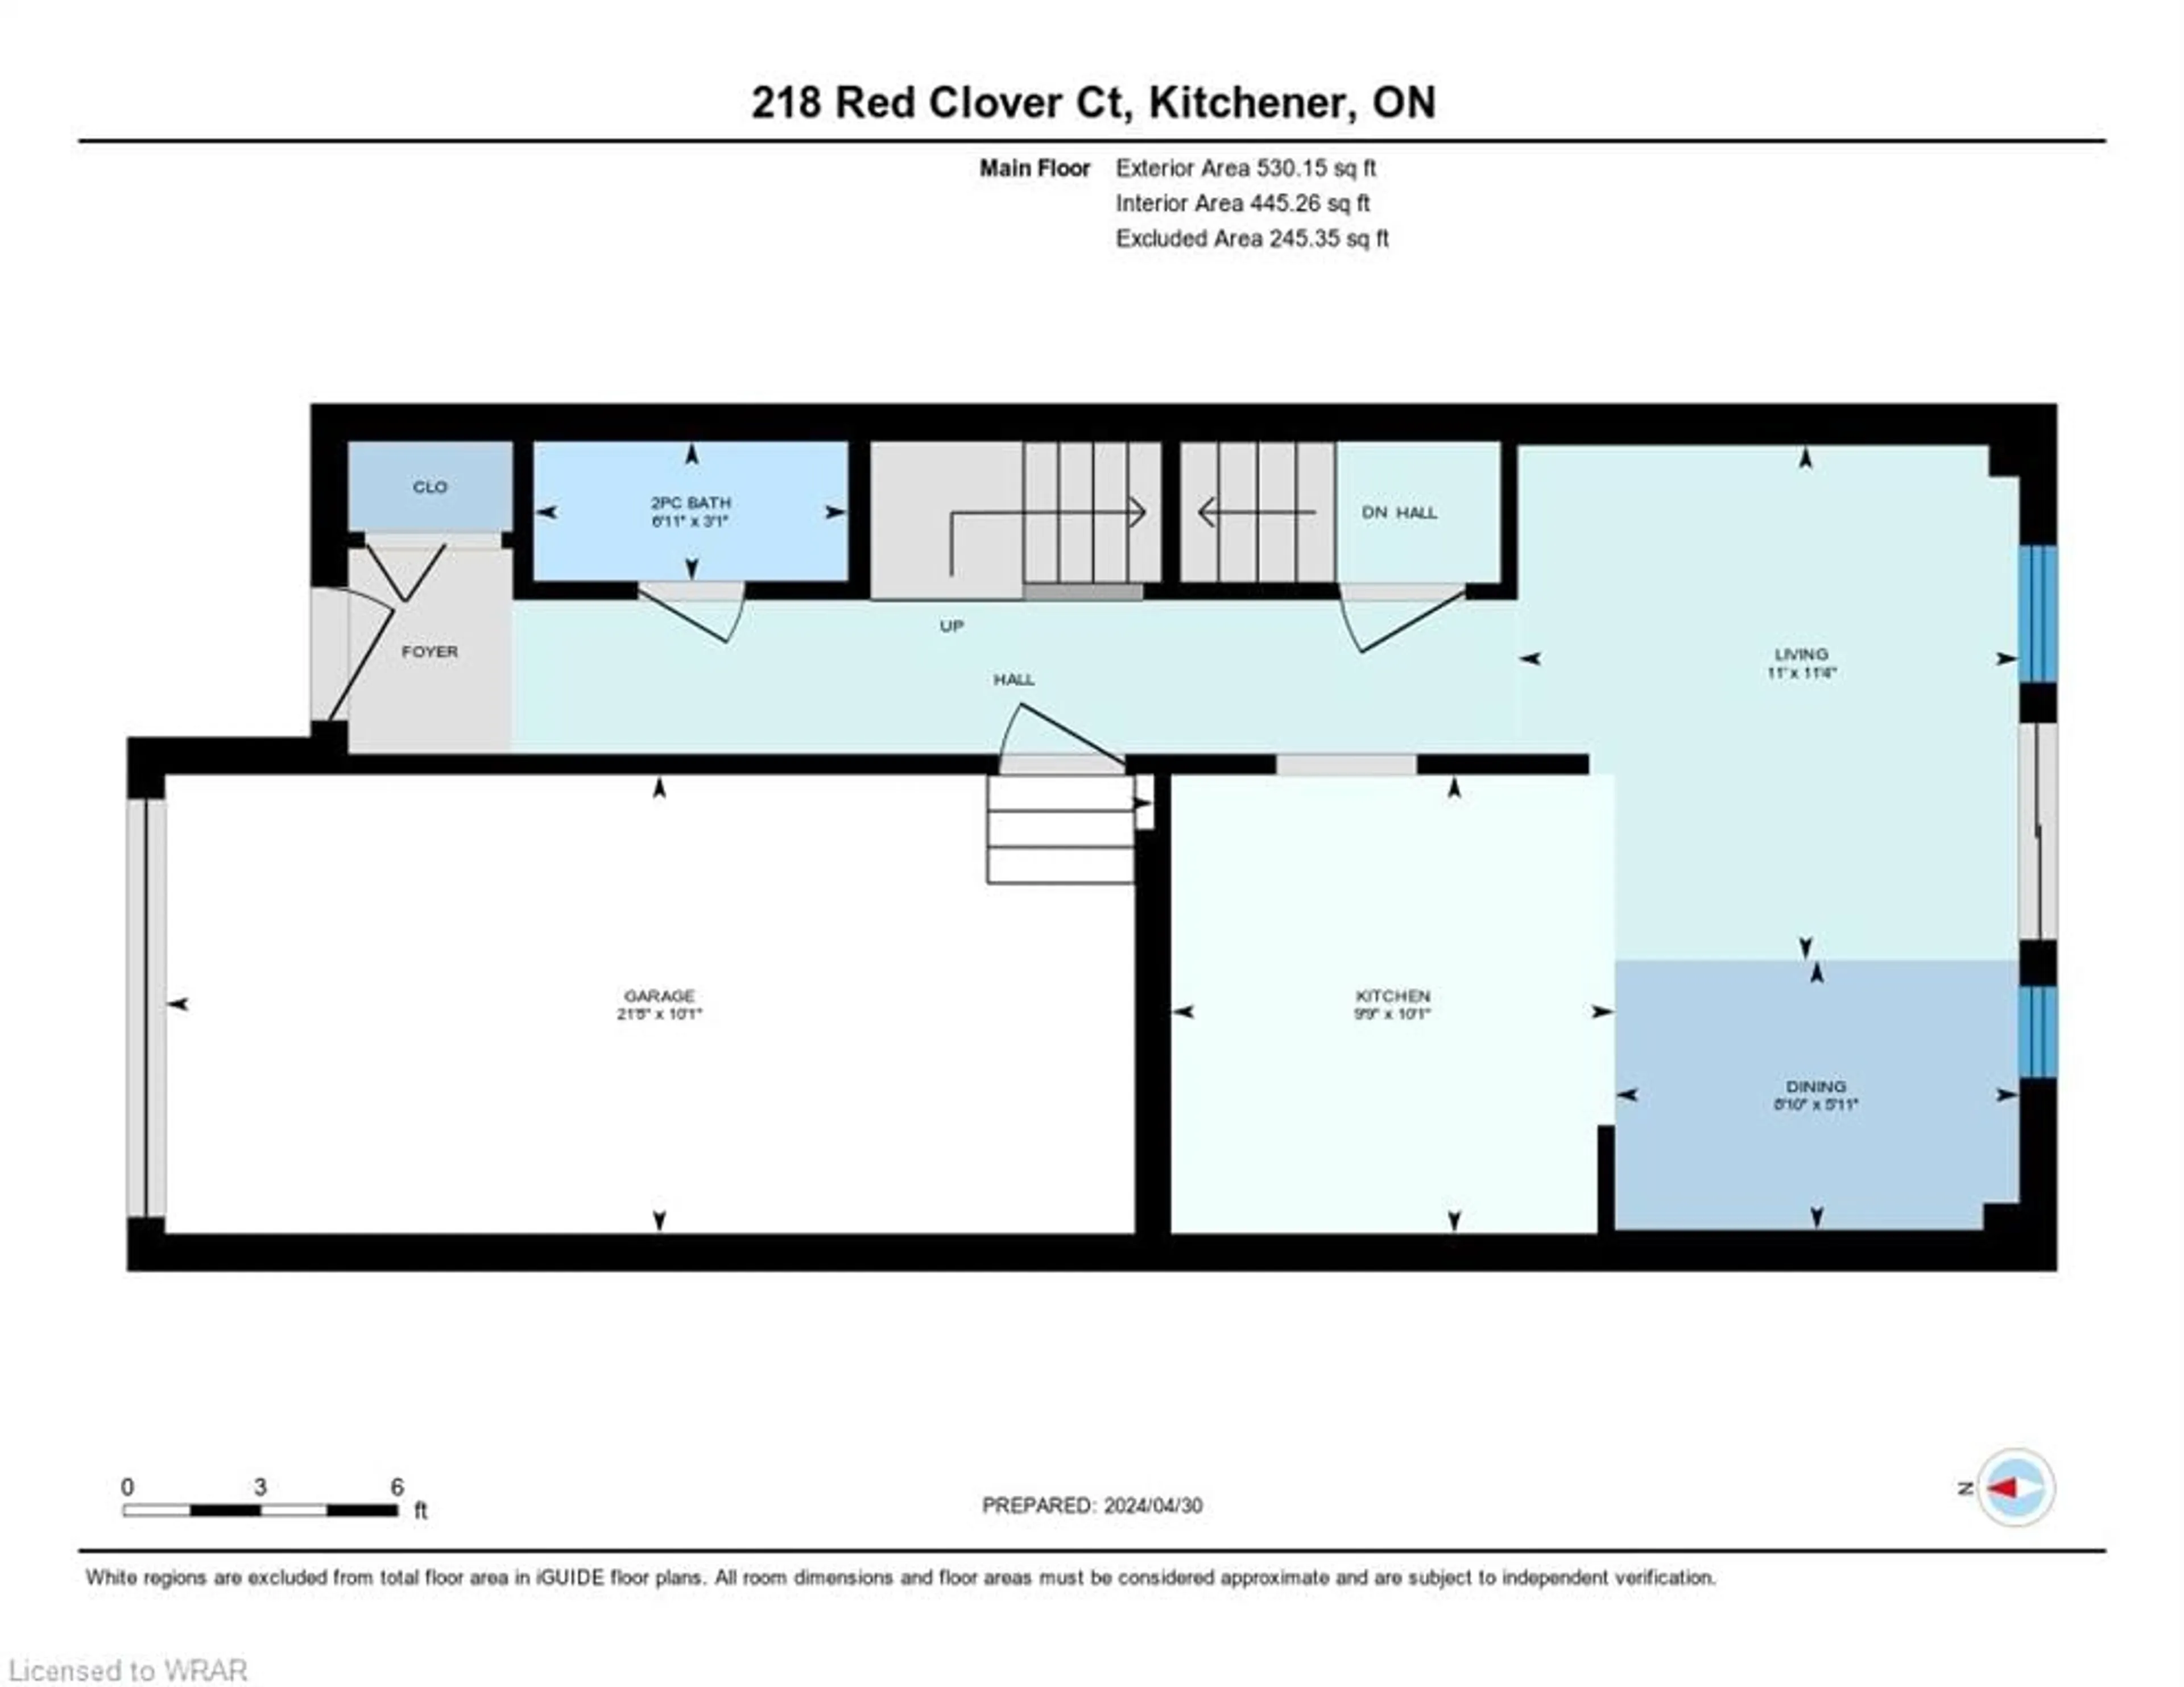 Floor plan for 218 Red Clover Crt, Kitchener Ontario N2E 4J5